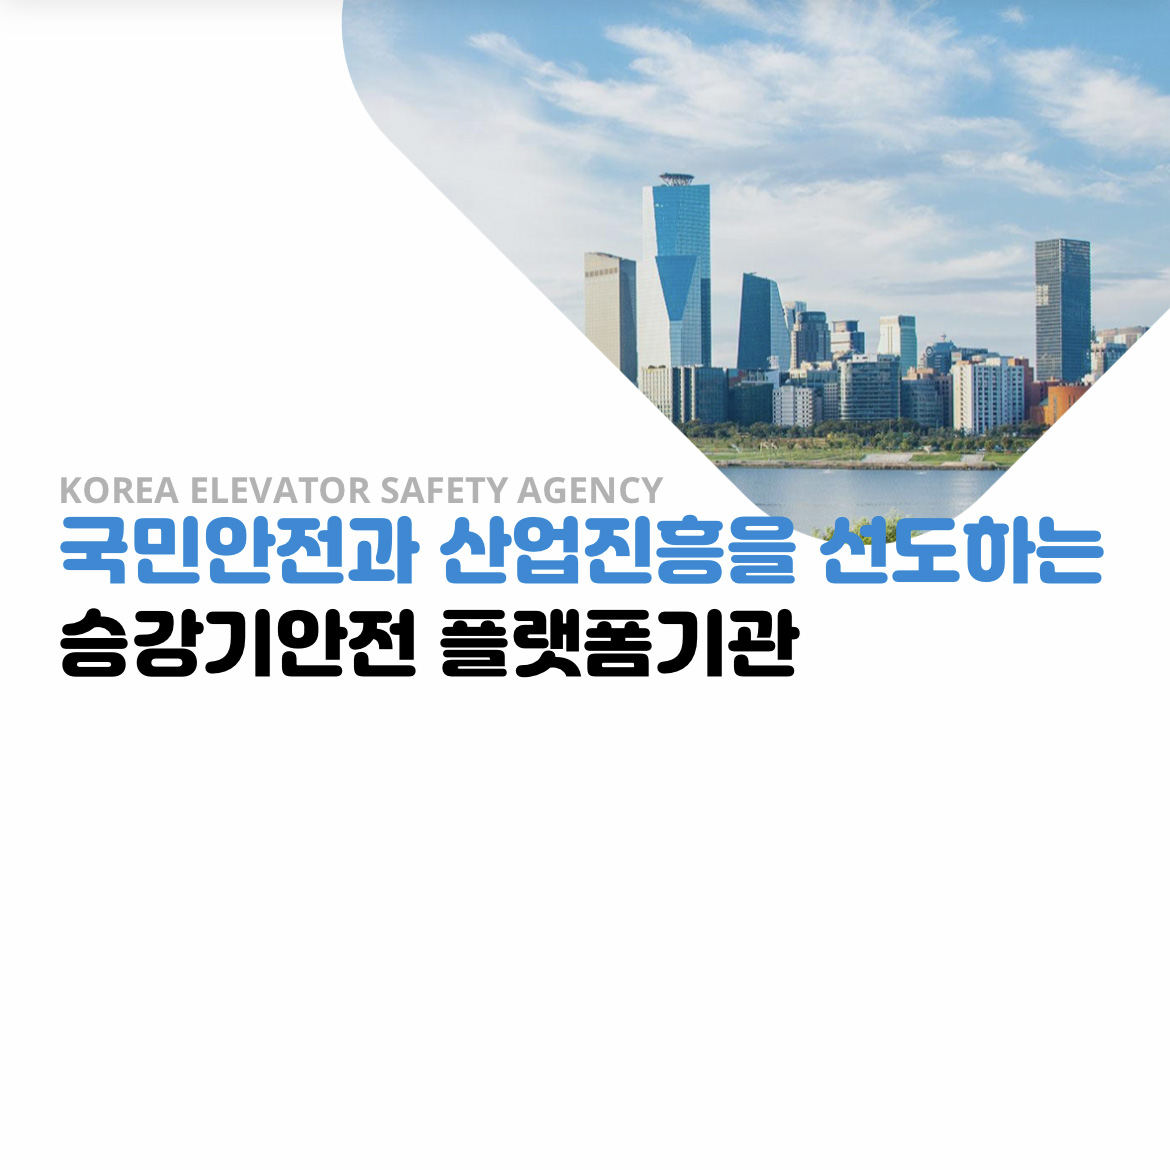 국민안전과 산업진흥을 선도하는 승강기안전 플랫폼기관